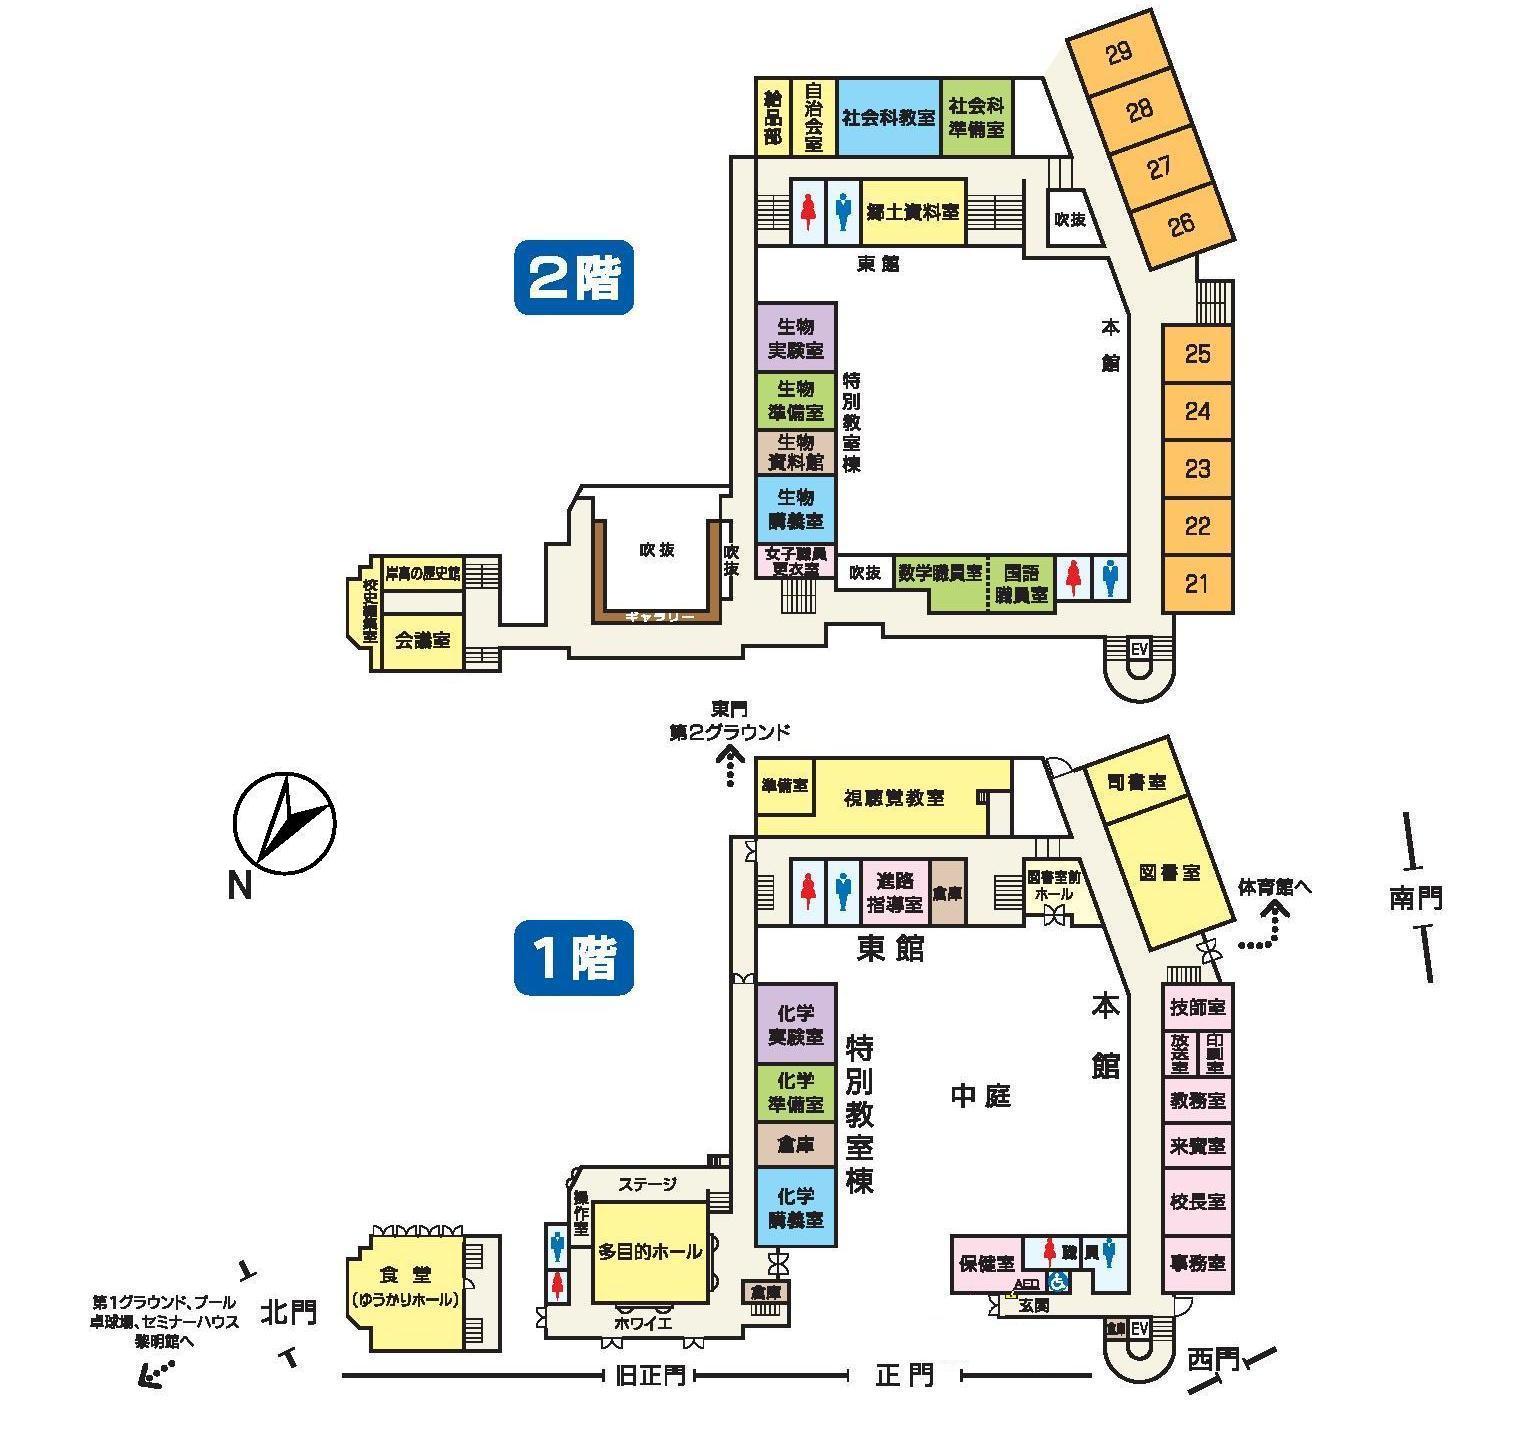 岸和田高校内マップ1,2階